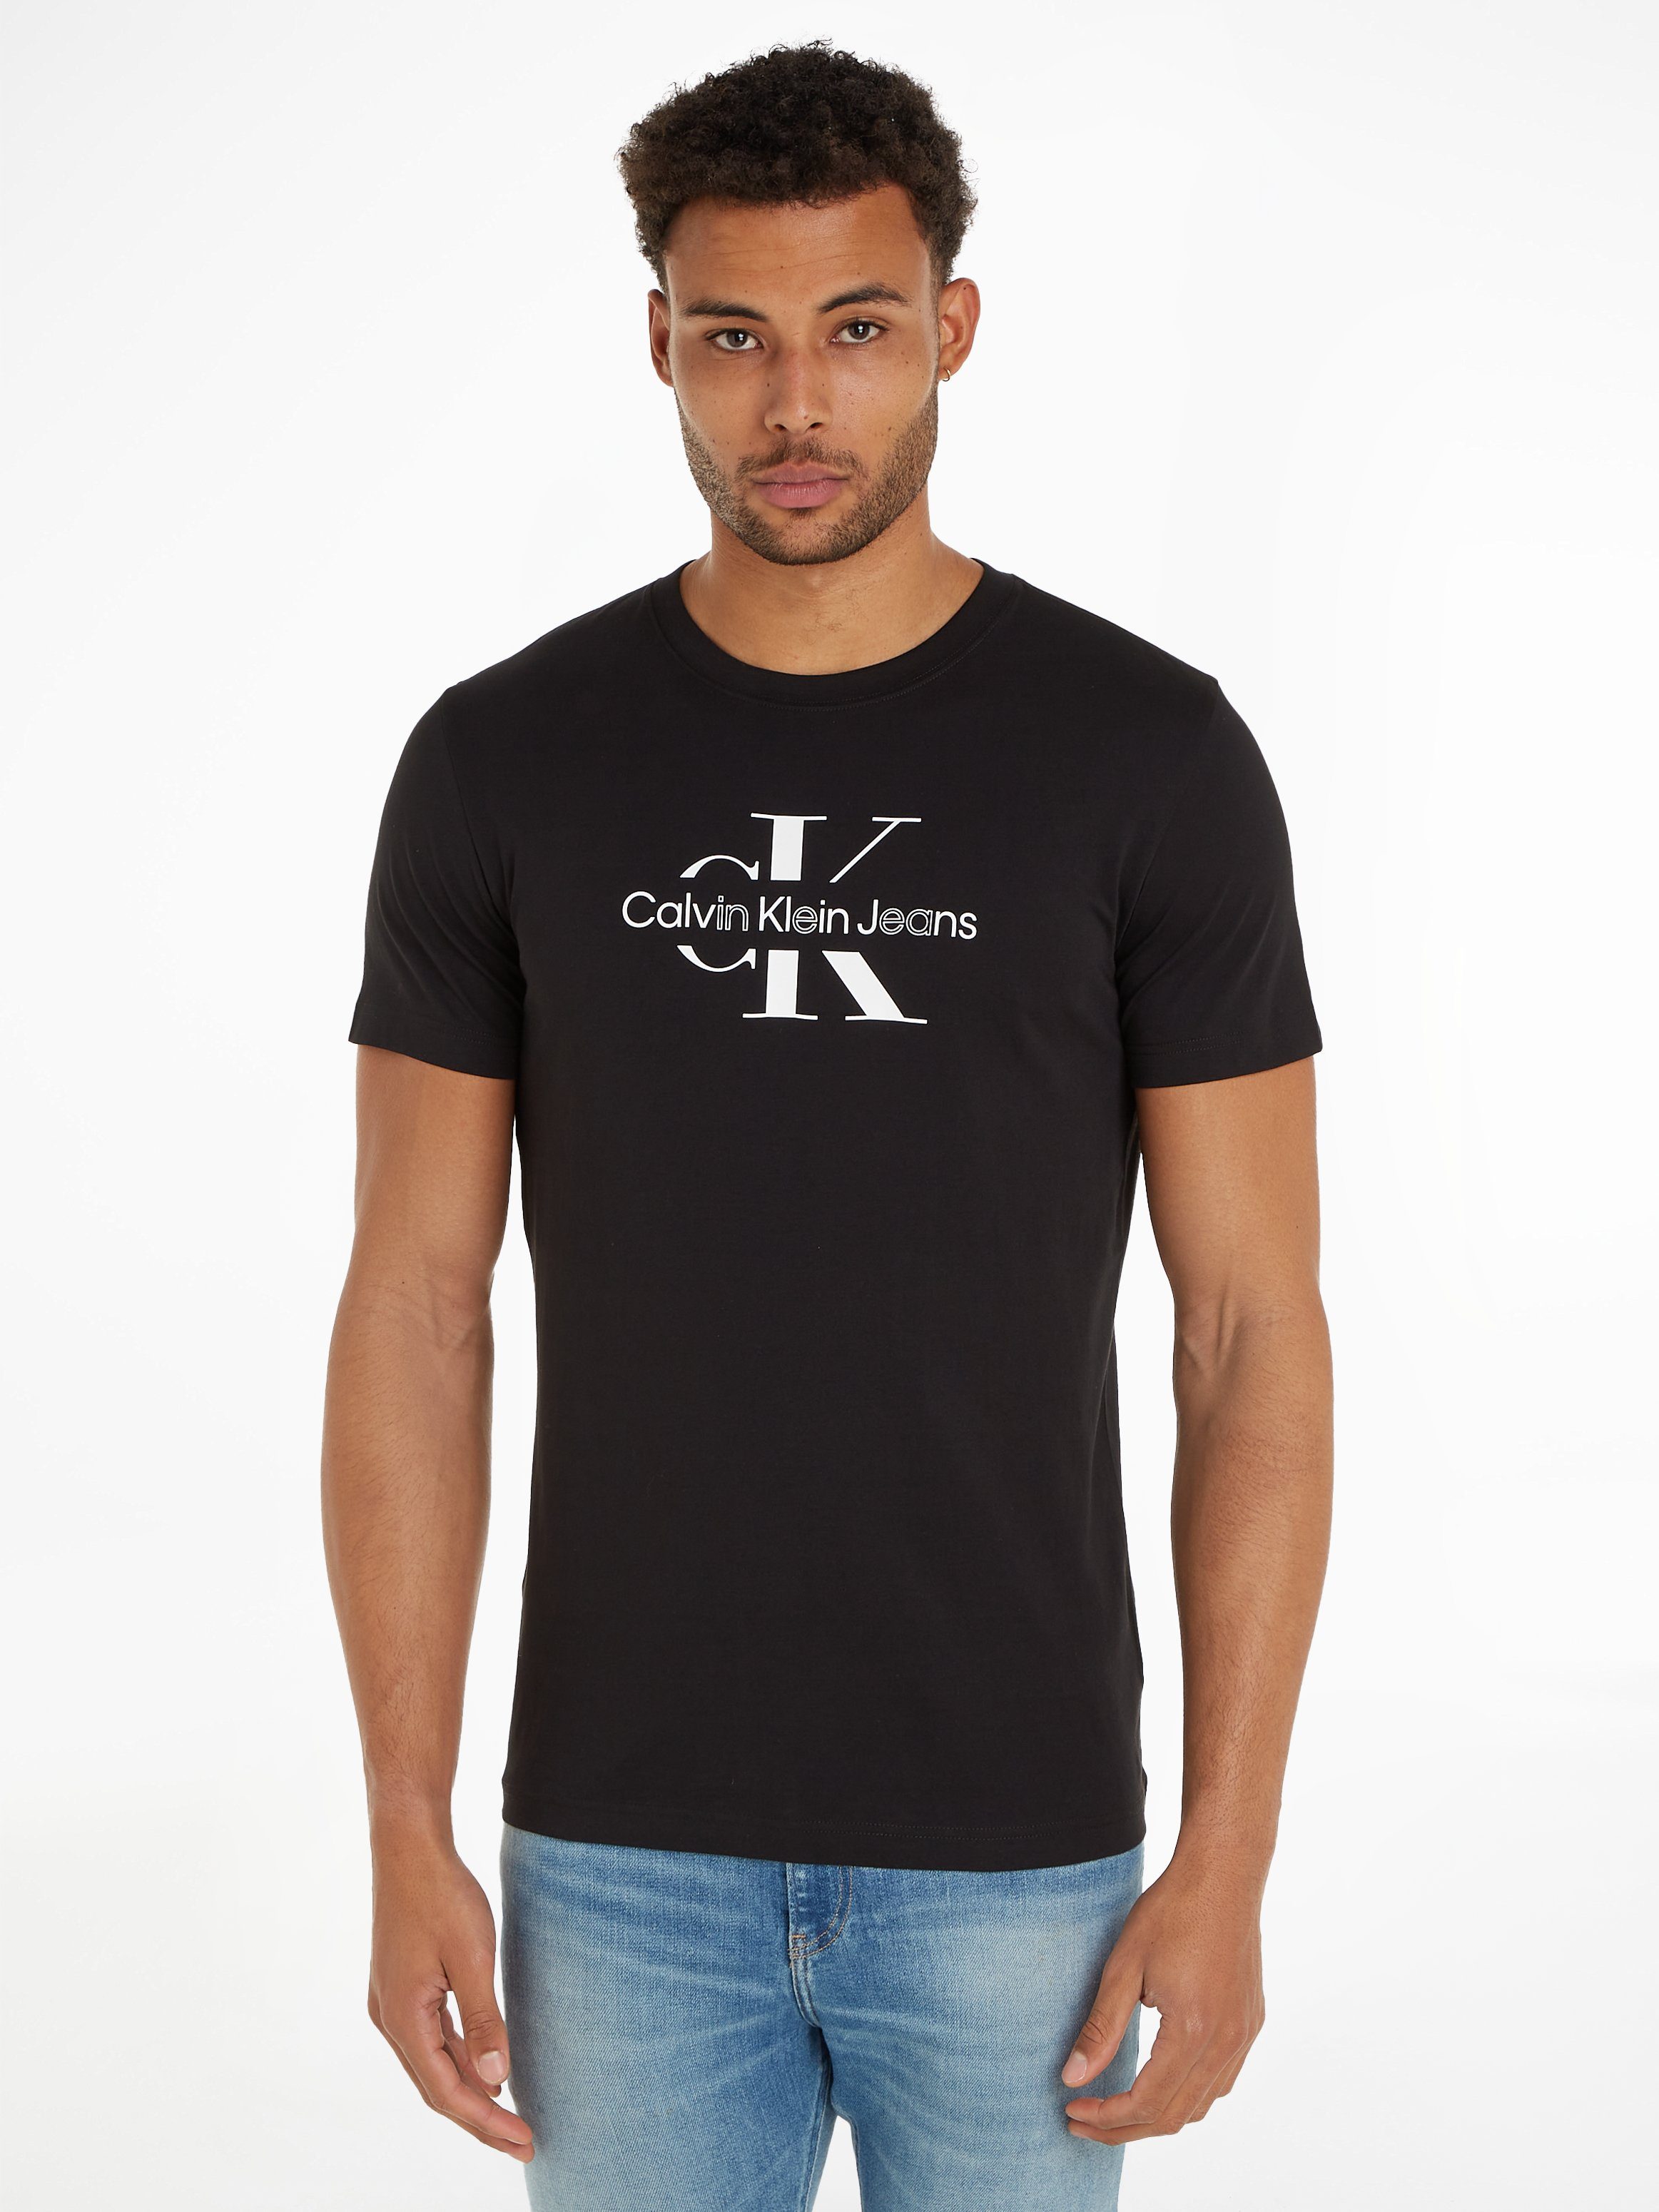 Schwarze Calvin Klein T-Shirts für Herren online kaufen | OTTO | T-Shirts